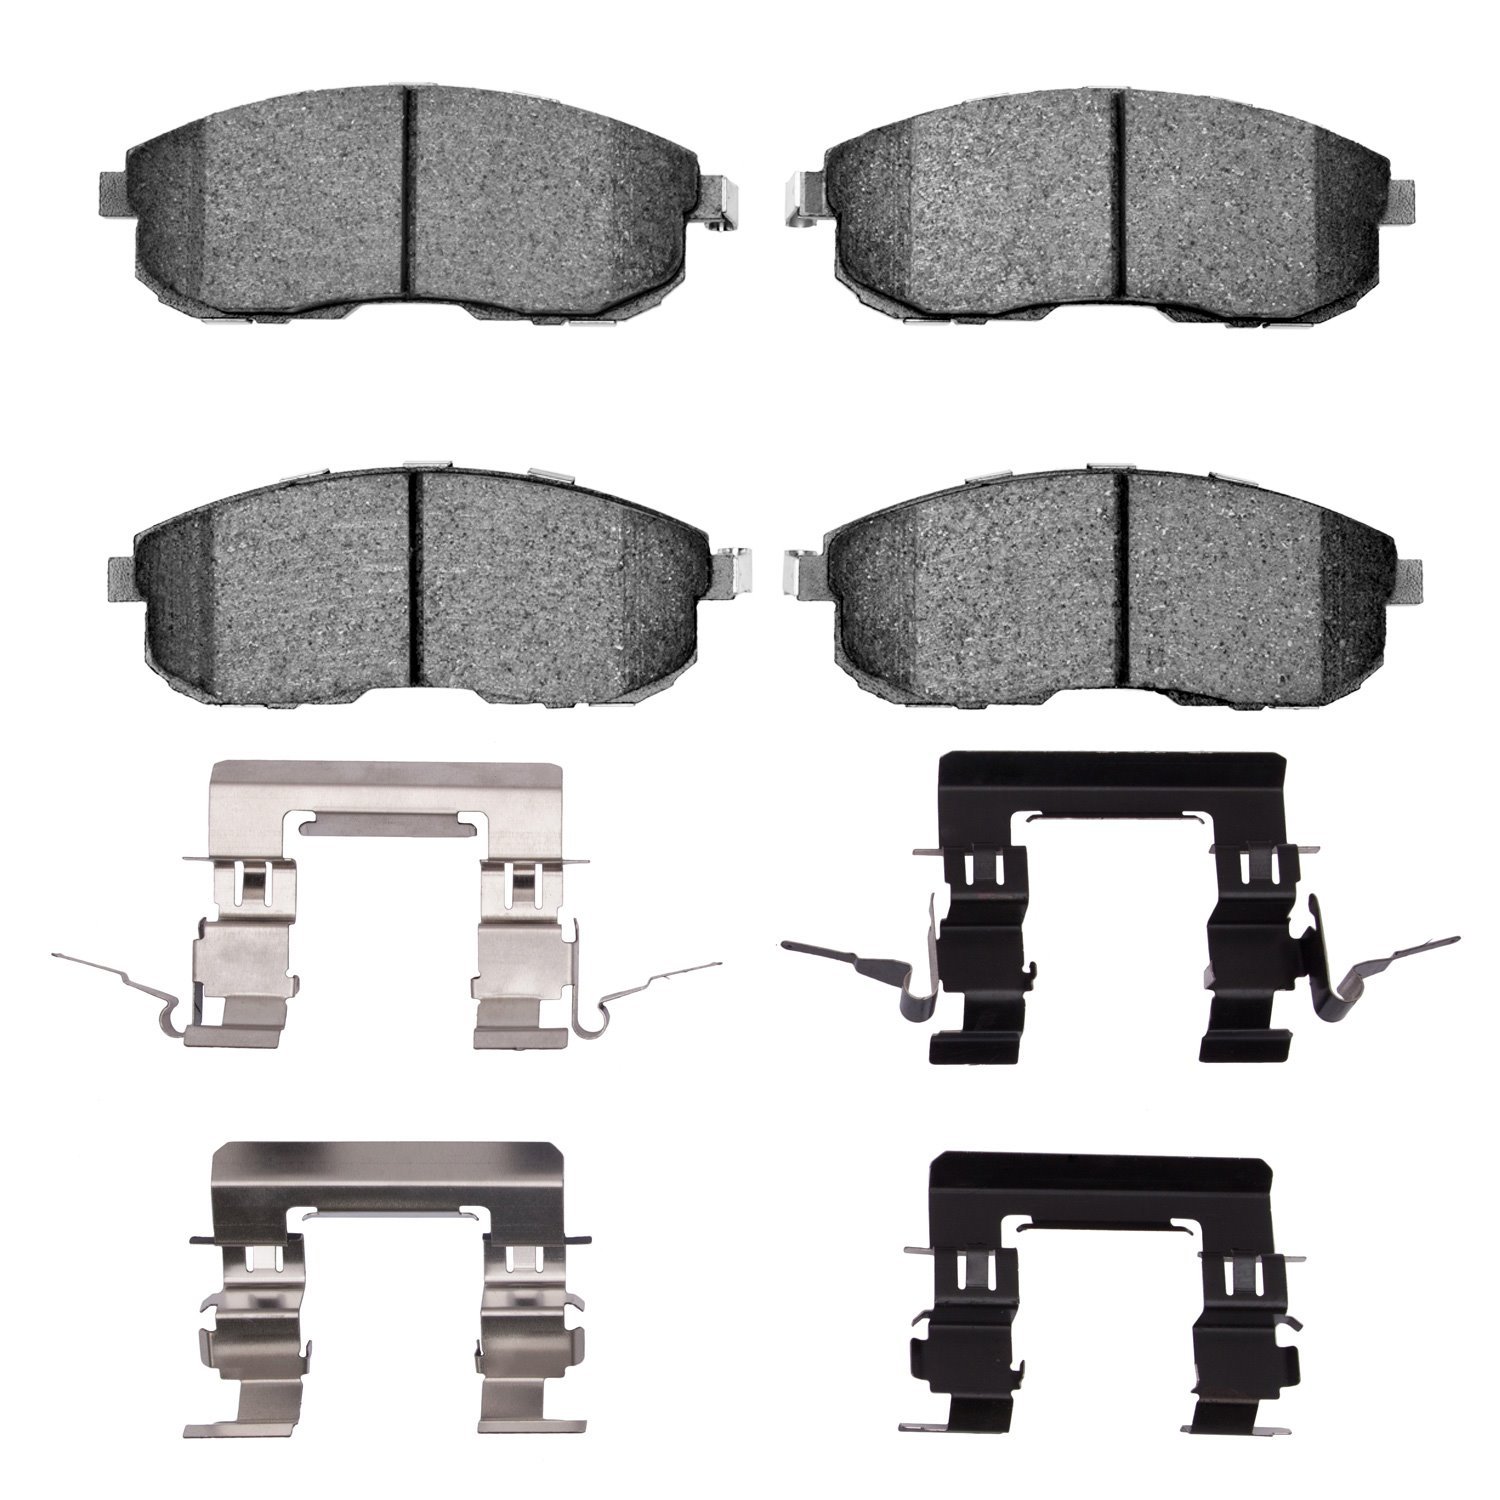 1553-0815-02 5000 Advanced Low-Metallic Brake Pads & Hardware Kit, 2007-2019 Infiniti/Nissan, Position: Front